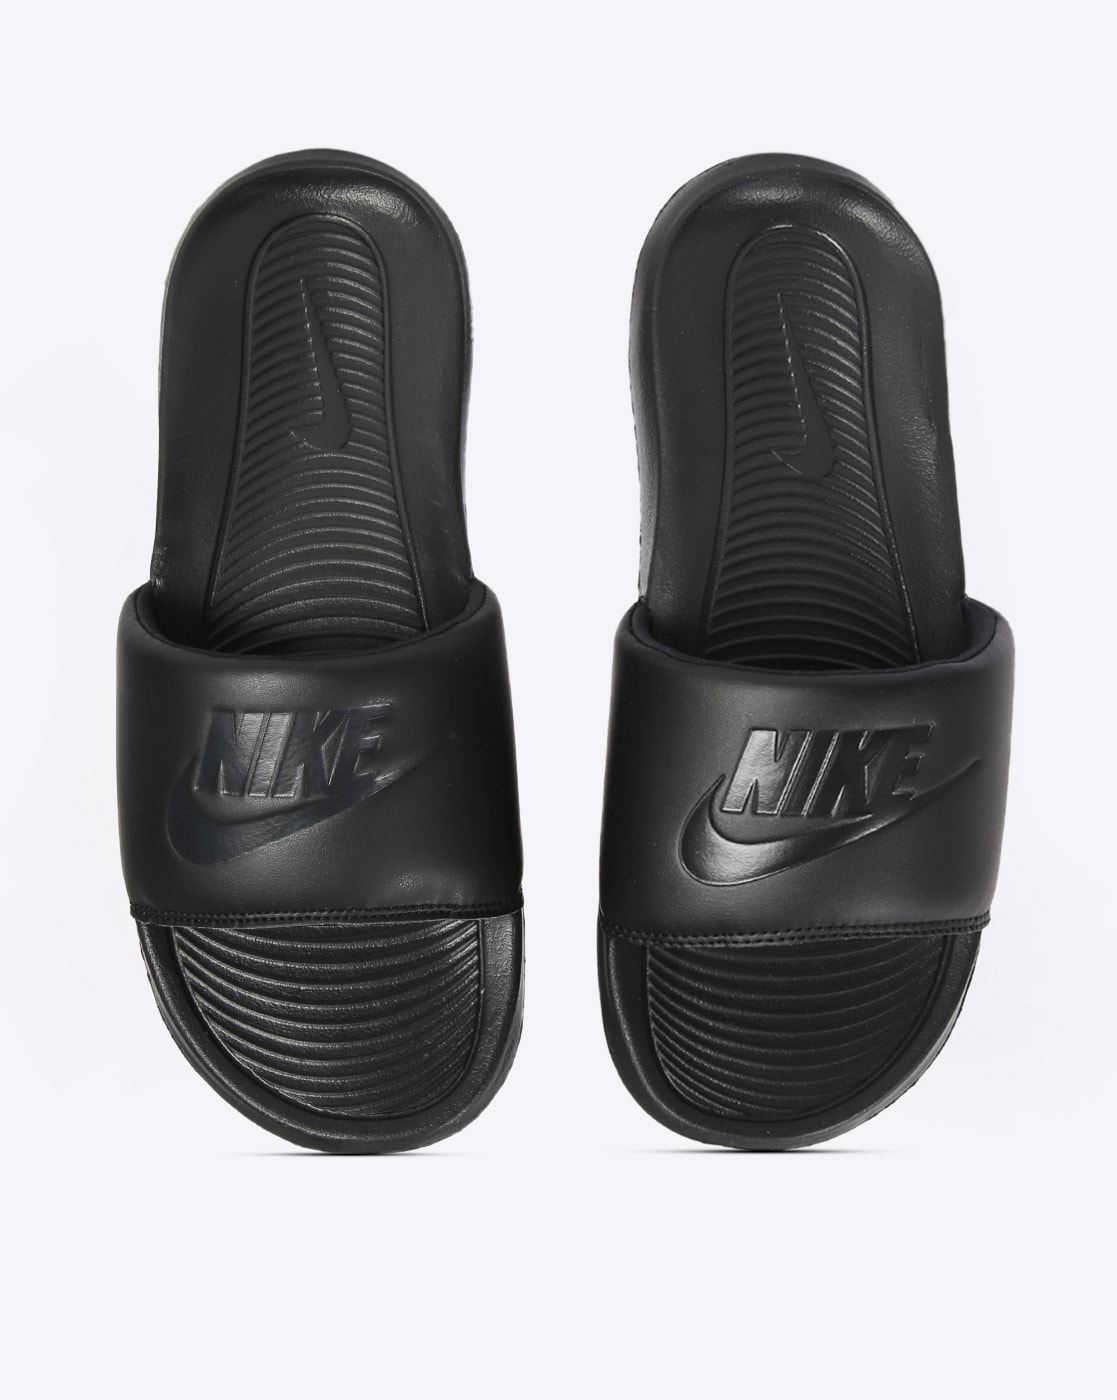 Women's Sandals, Slides & Flip Flops. Nike VN